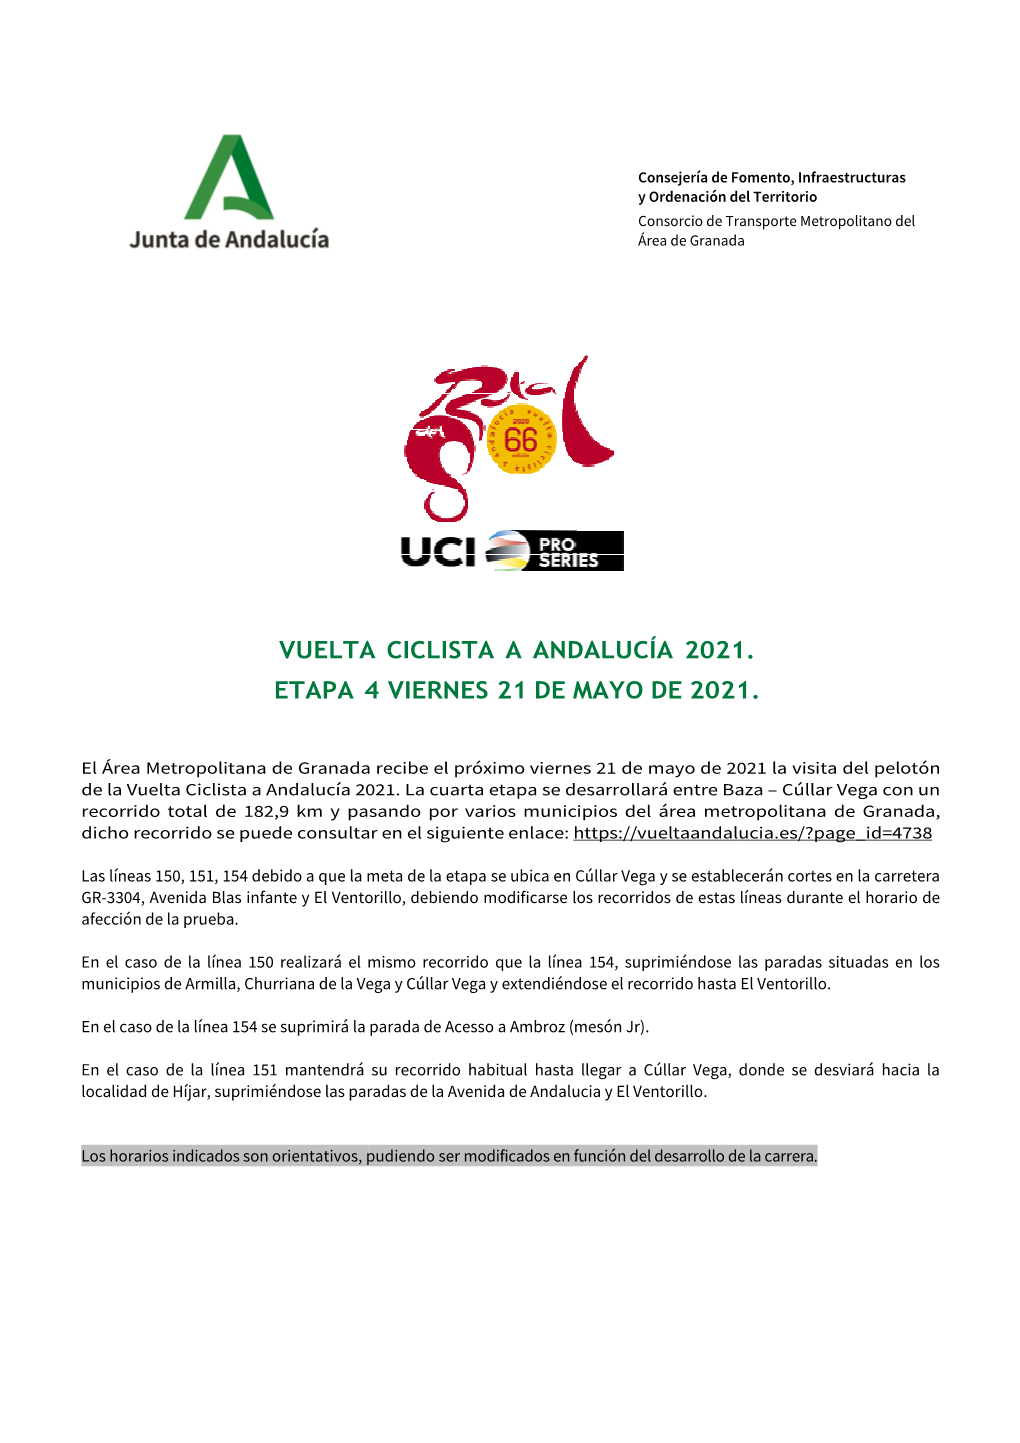 Vuelta Etapa 4 Vuelta Ciclista a Andalucía 2021 4 Viernes 21